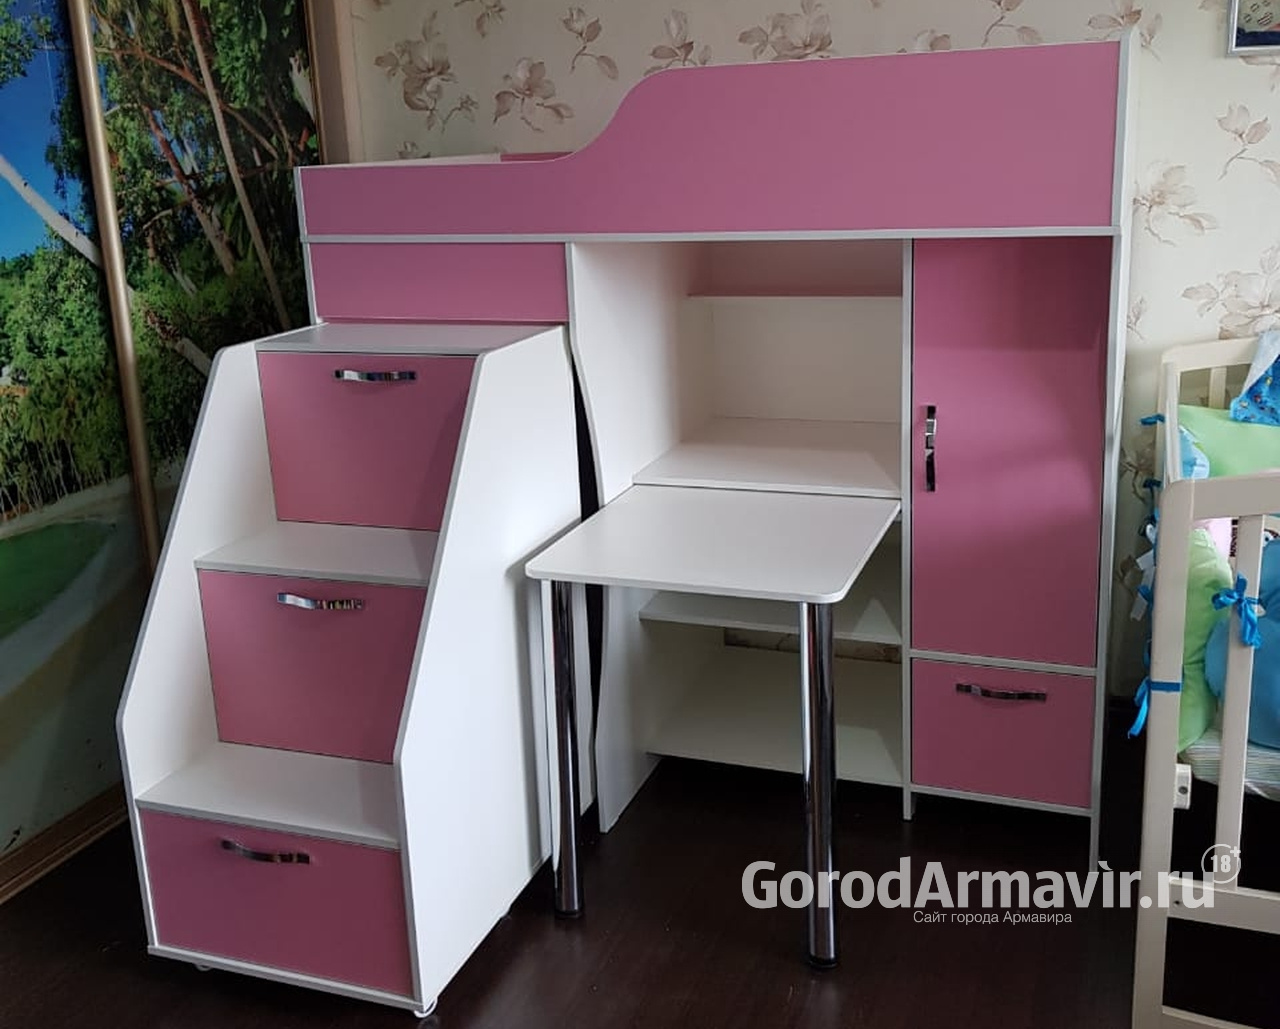 Корпусную мебель на заказ любой сложности предлагает фирма «Комфортный дом» в Армавире 